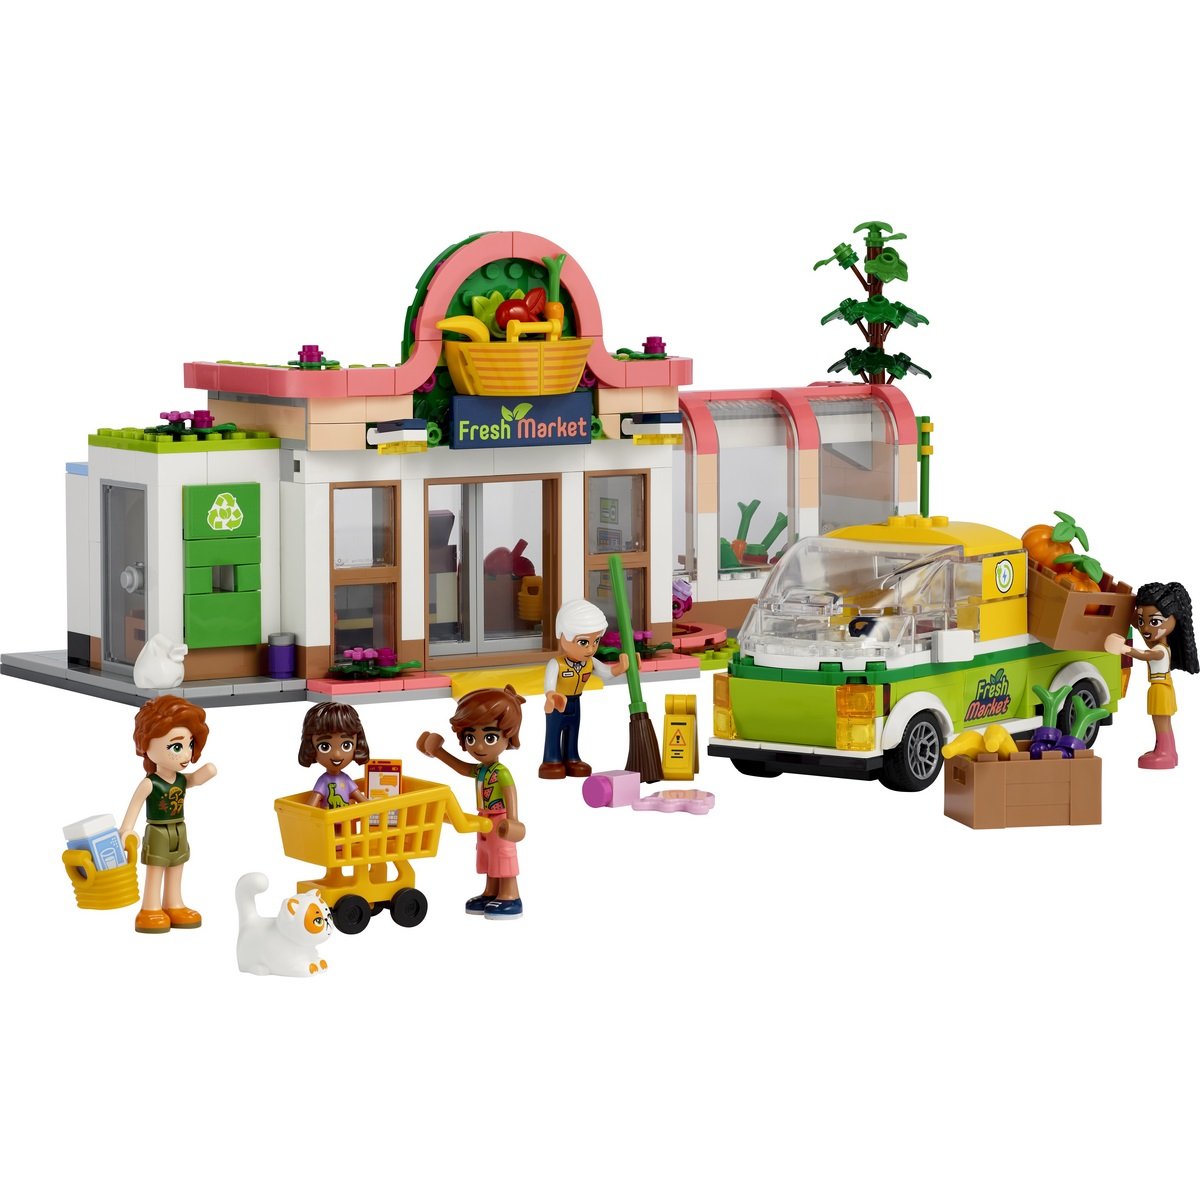 Lego friends - Jeux et jouets - mondedegamer